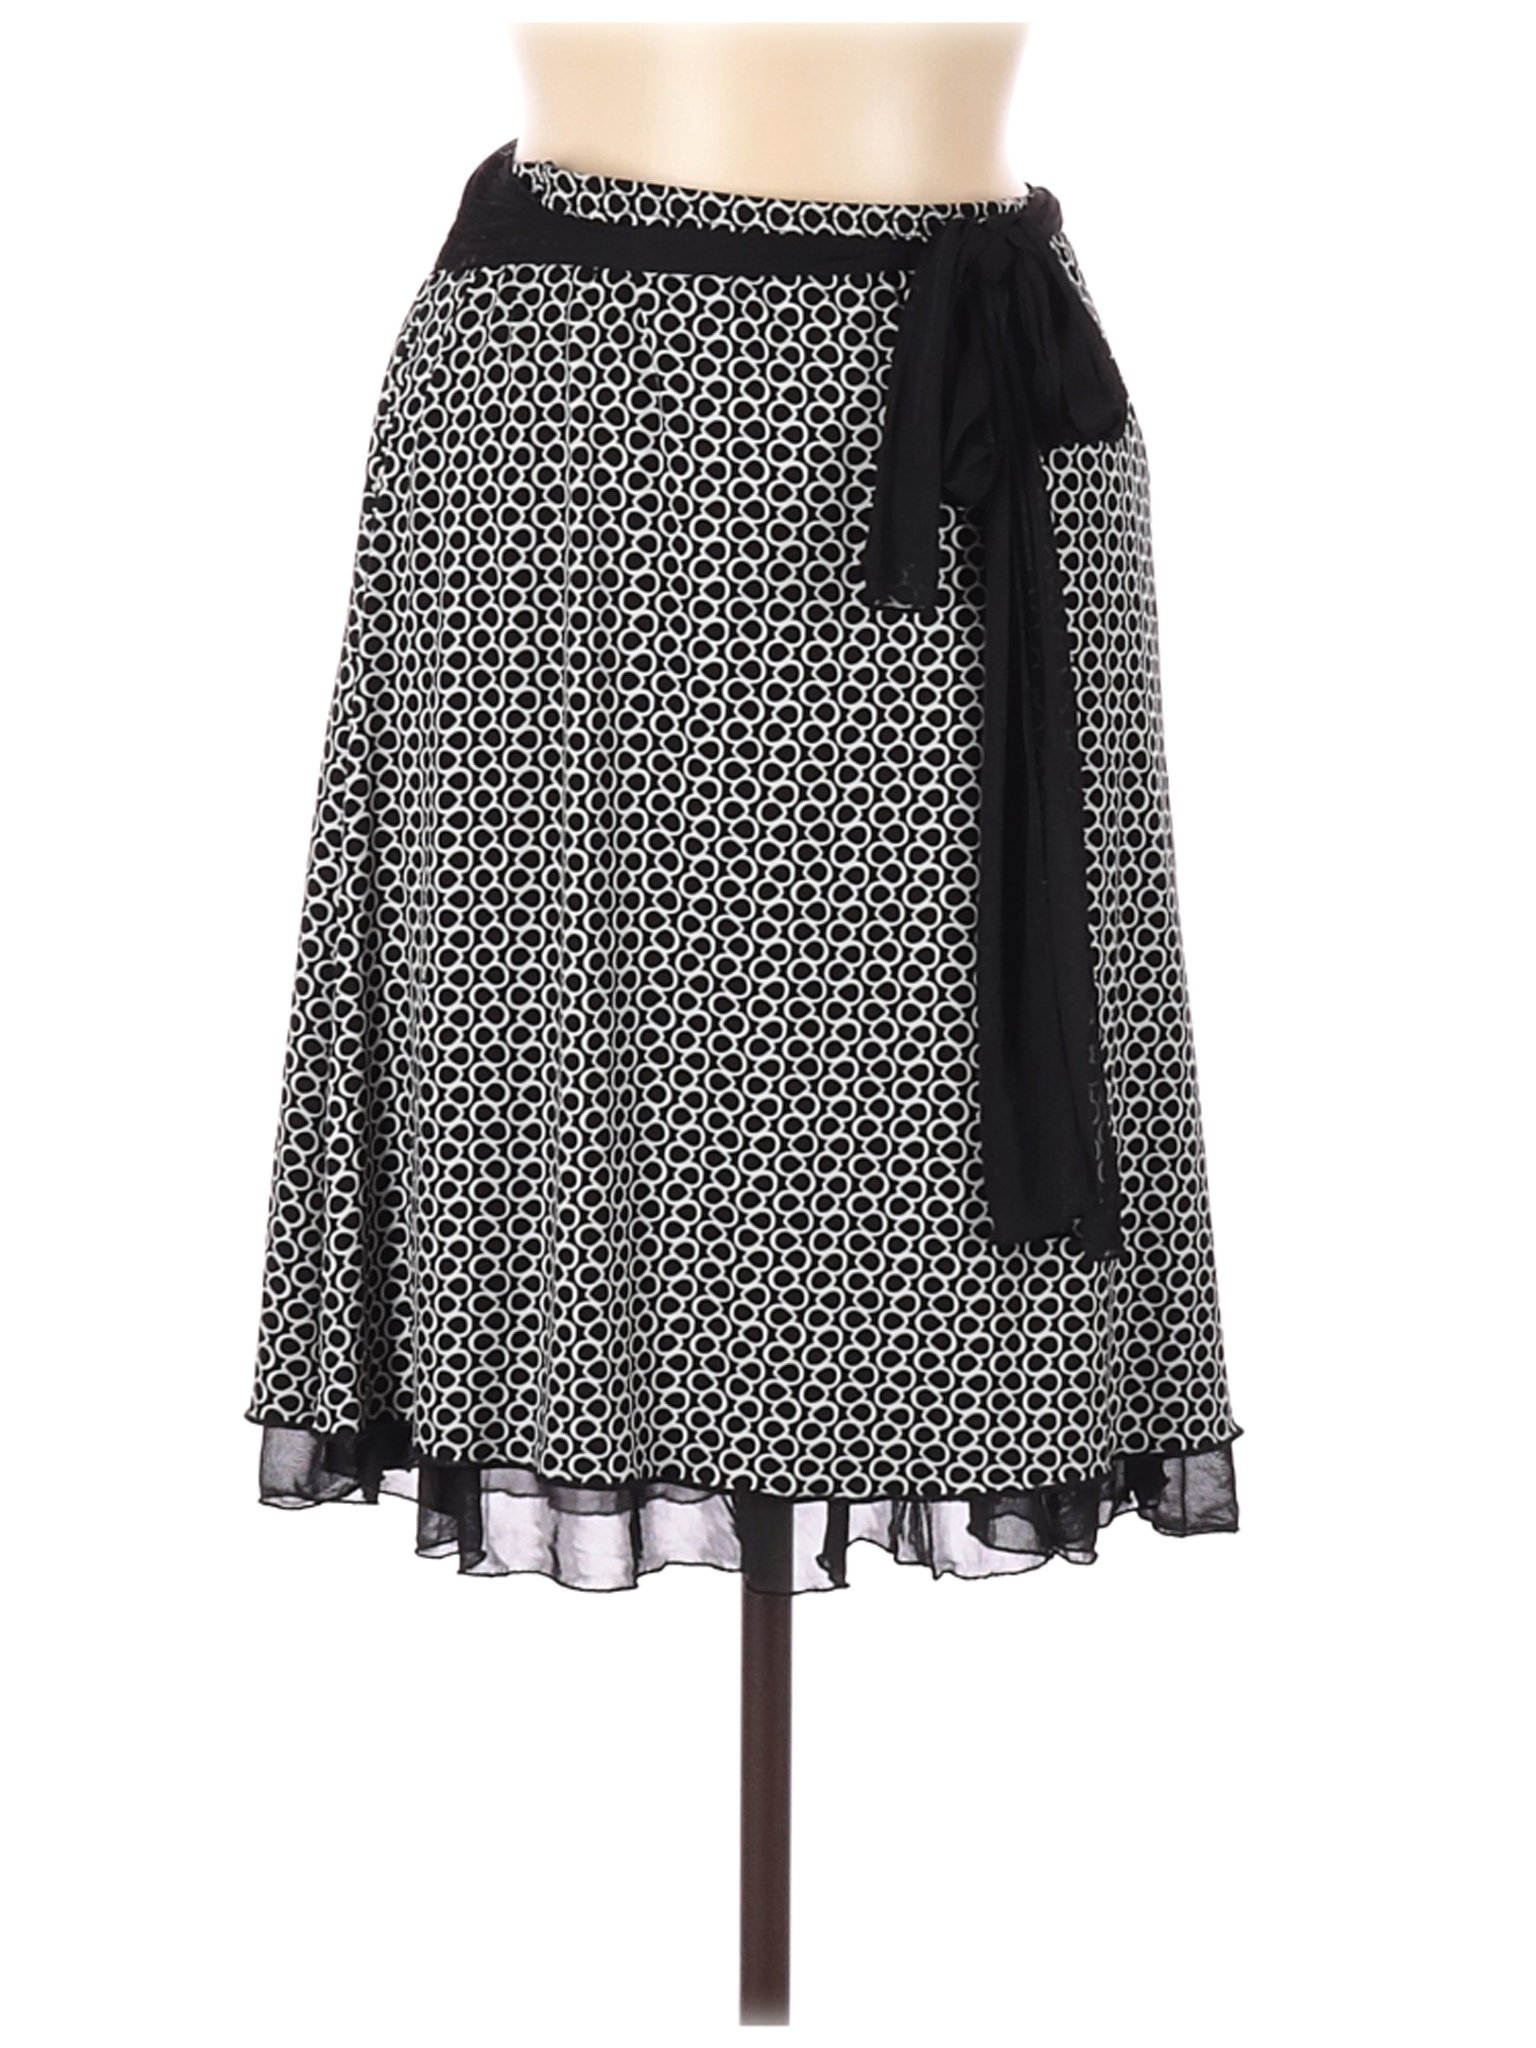 Wrapper Women Black Casual Skirt M | eBay